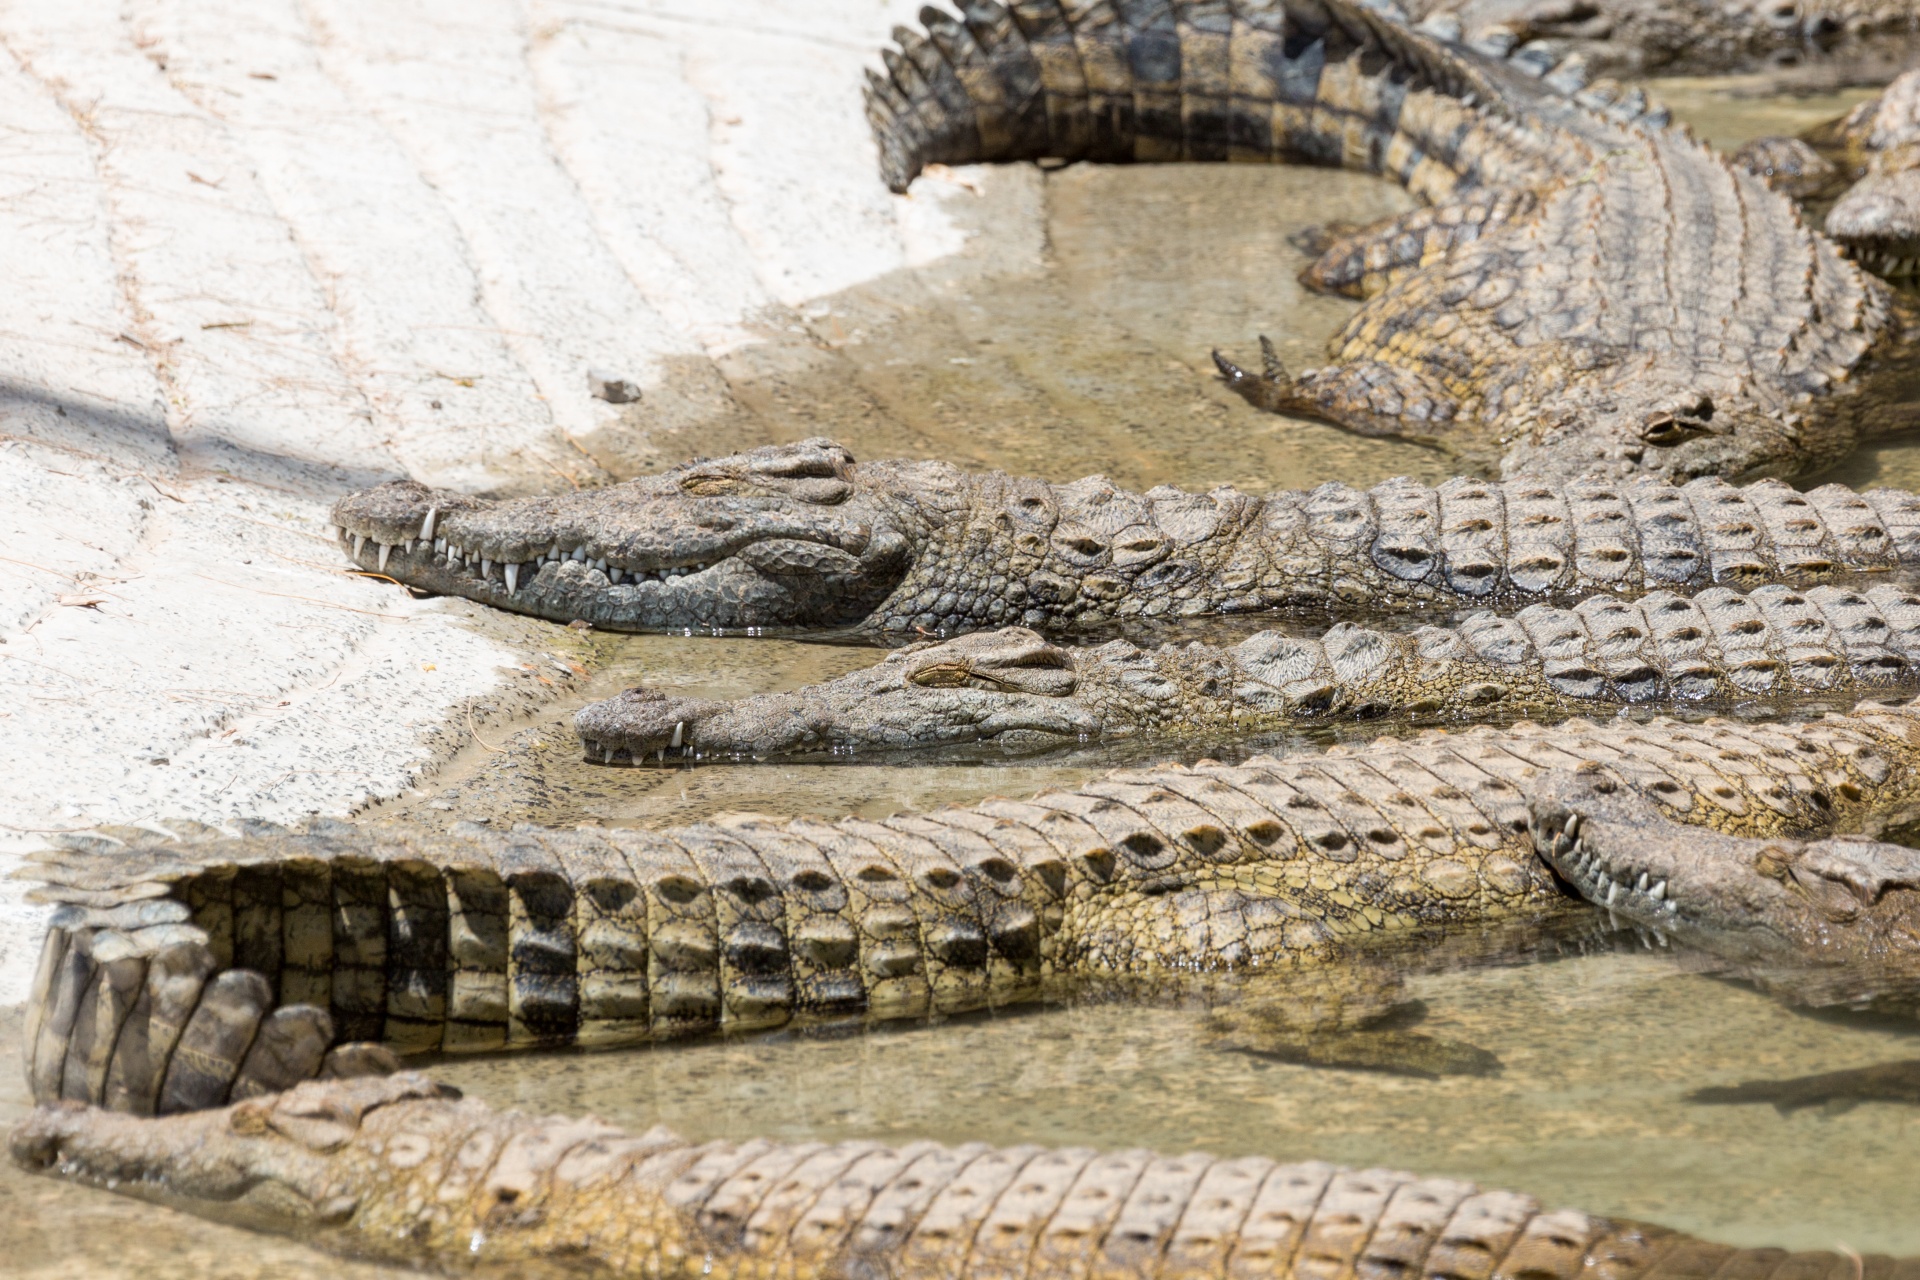 Crocodiles Sunbathing